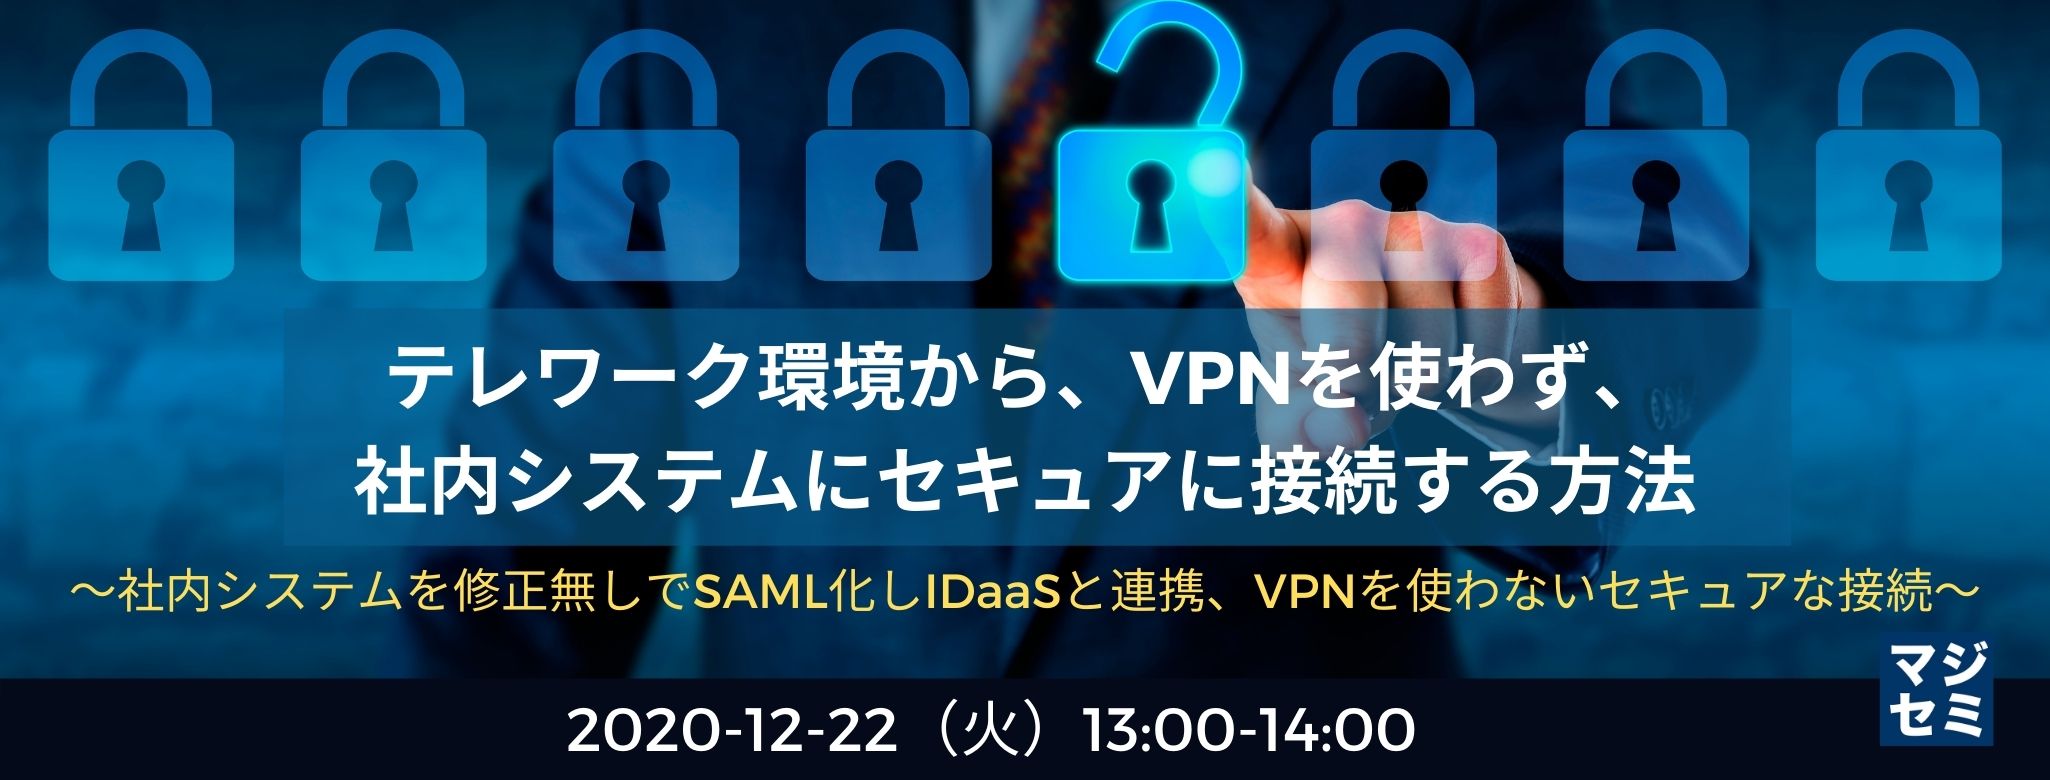  テレワーク環境から、VPNを使わず、社内システムにセキュアに接続する方法 ～社内システムを修正無しでSAML化しIDaaSと連携、VPNを使わないセキュアな接続～